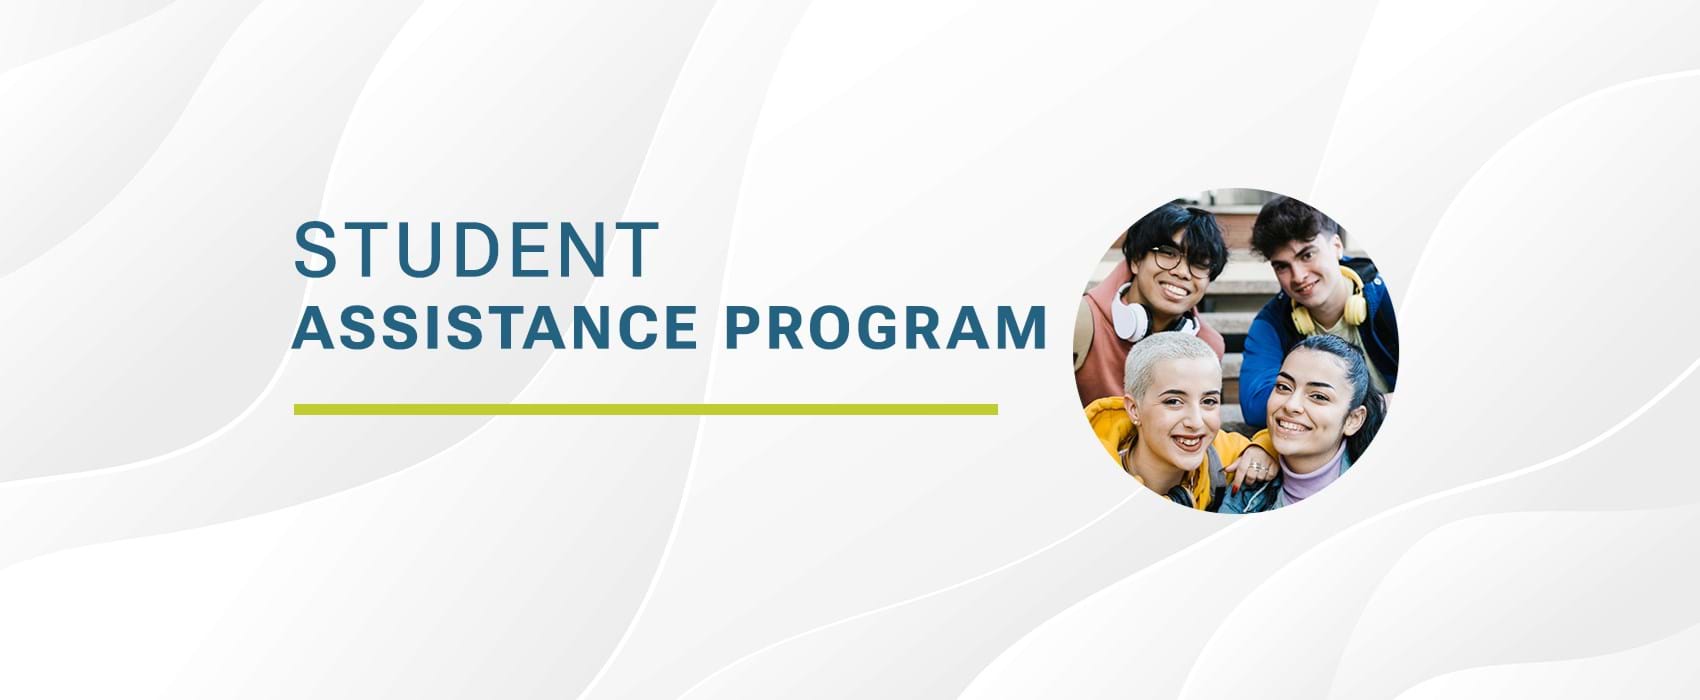 Student Assistance Program (SAP) Banner Image